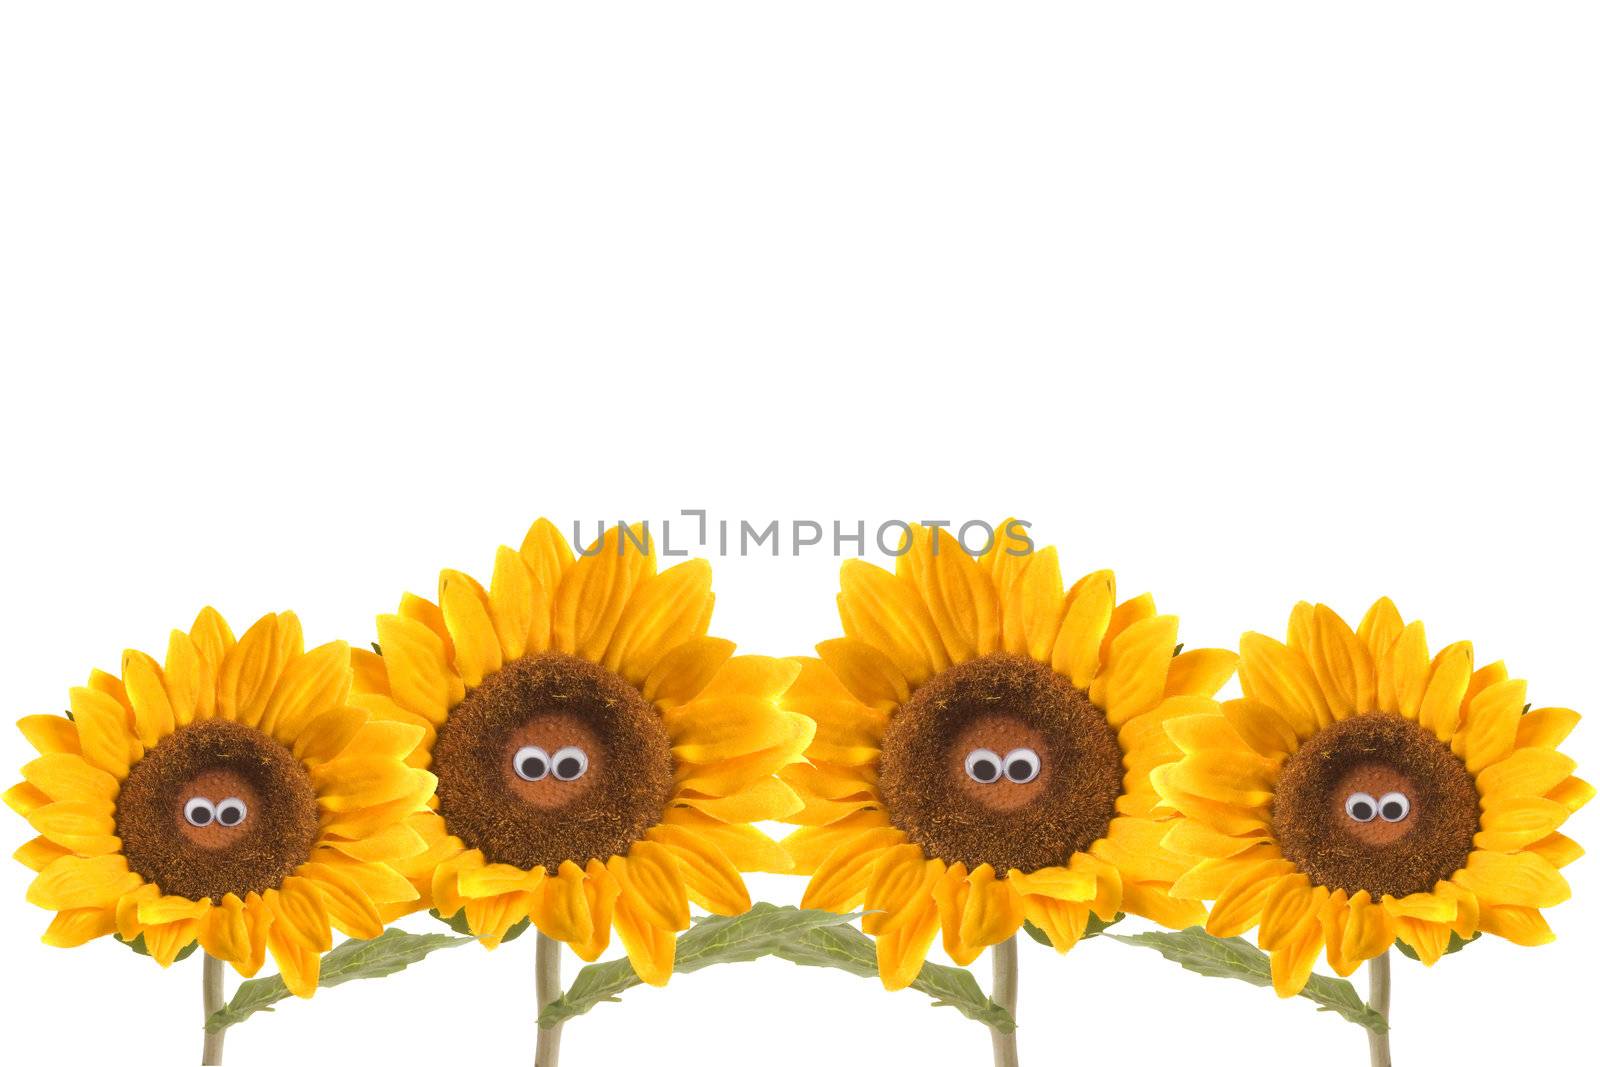 four eyed sunflower isolated on white background 